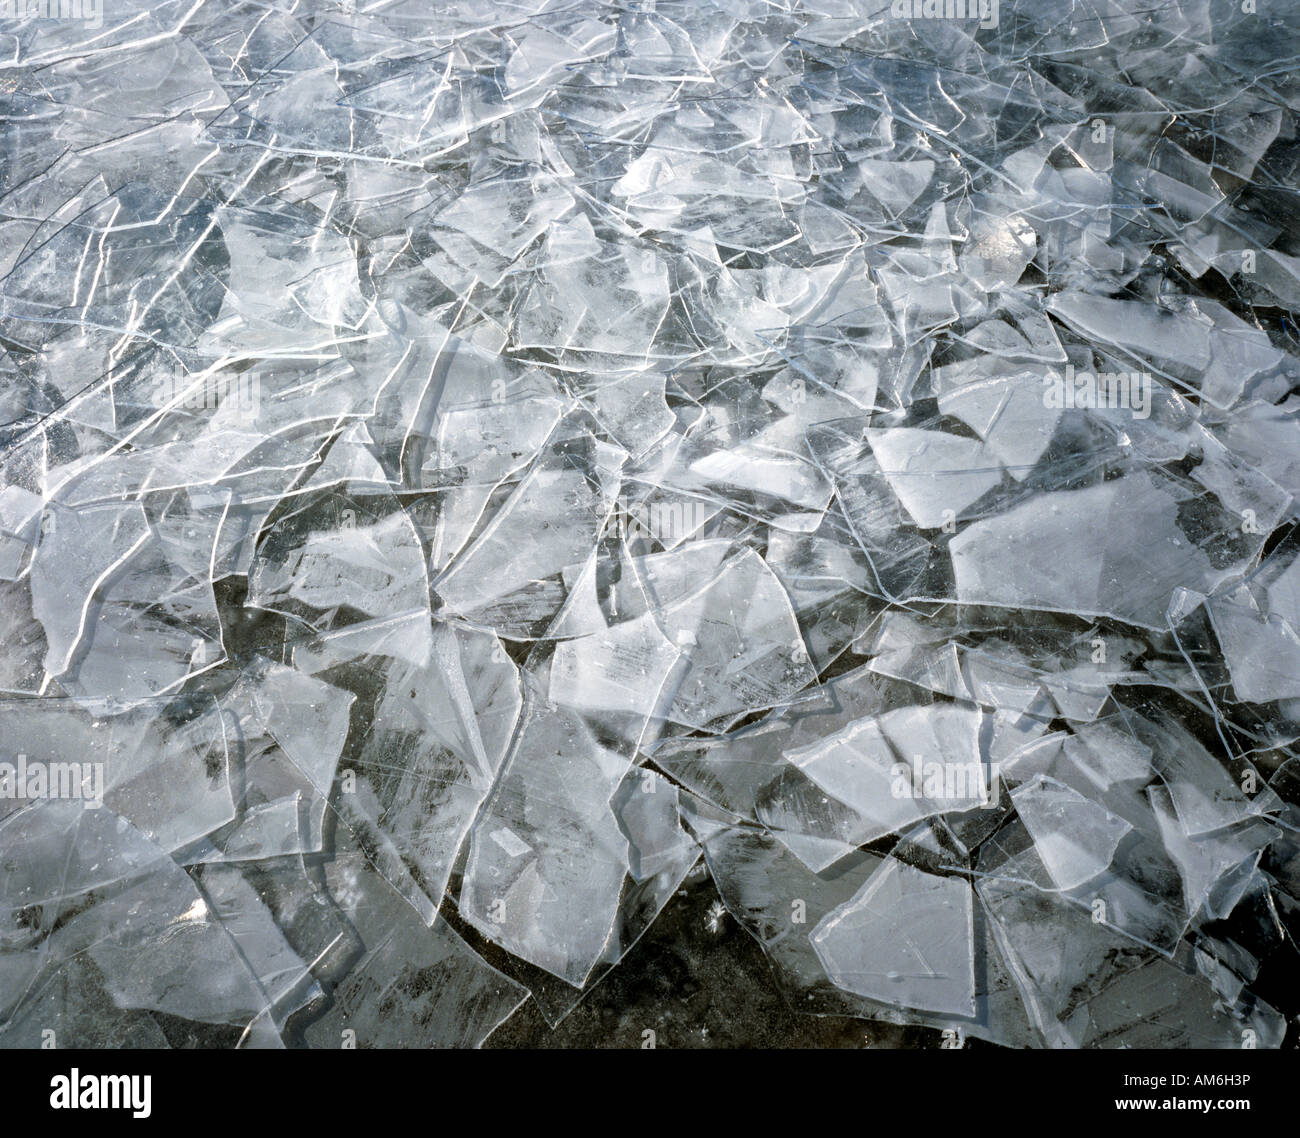 La glace brisée, port du lac de Chiemsee, Chiemgau, Haute-Bavière, Allemagne Banque D'Images